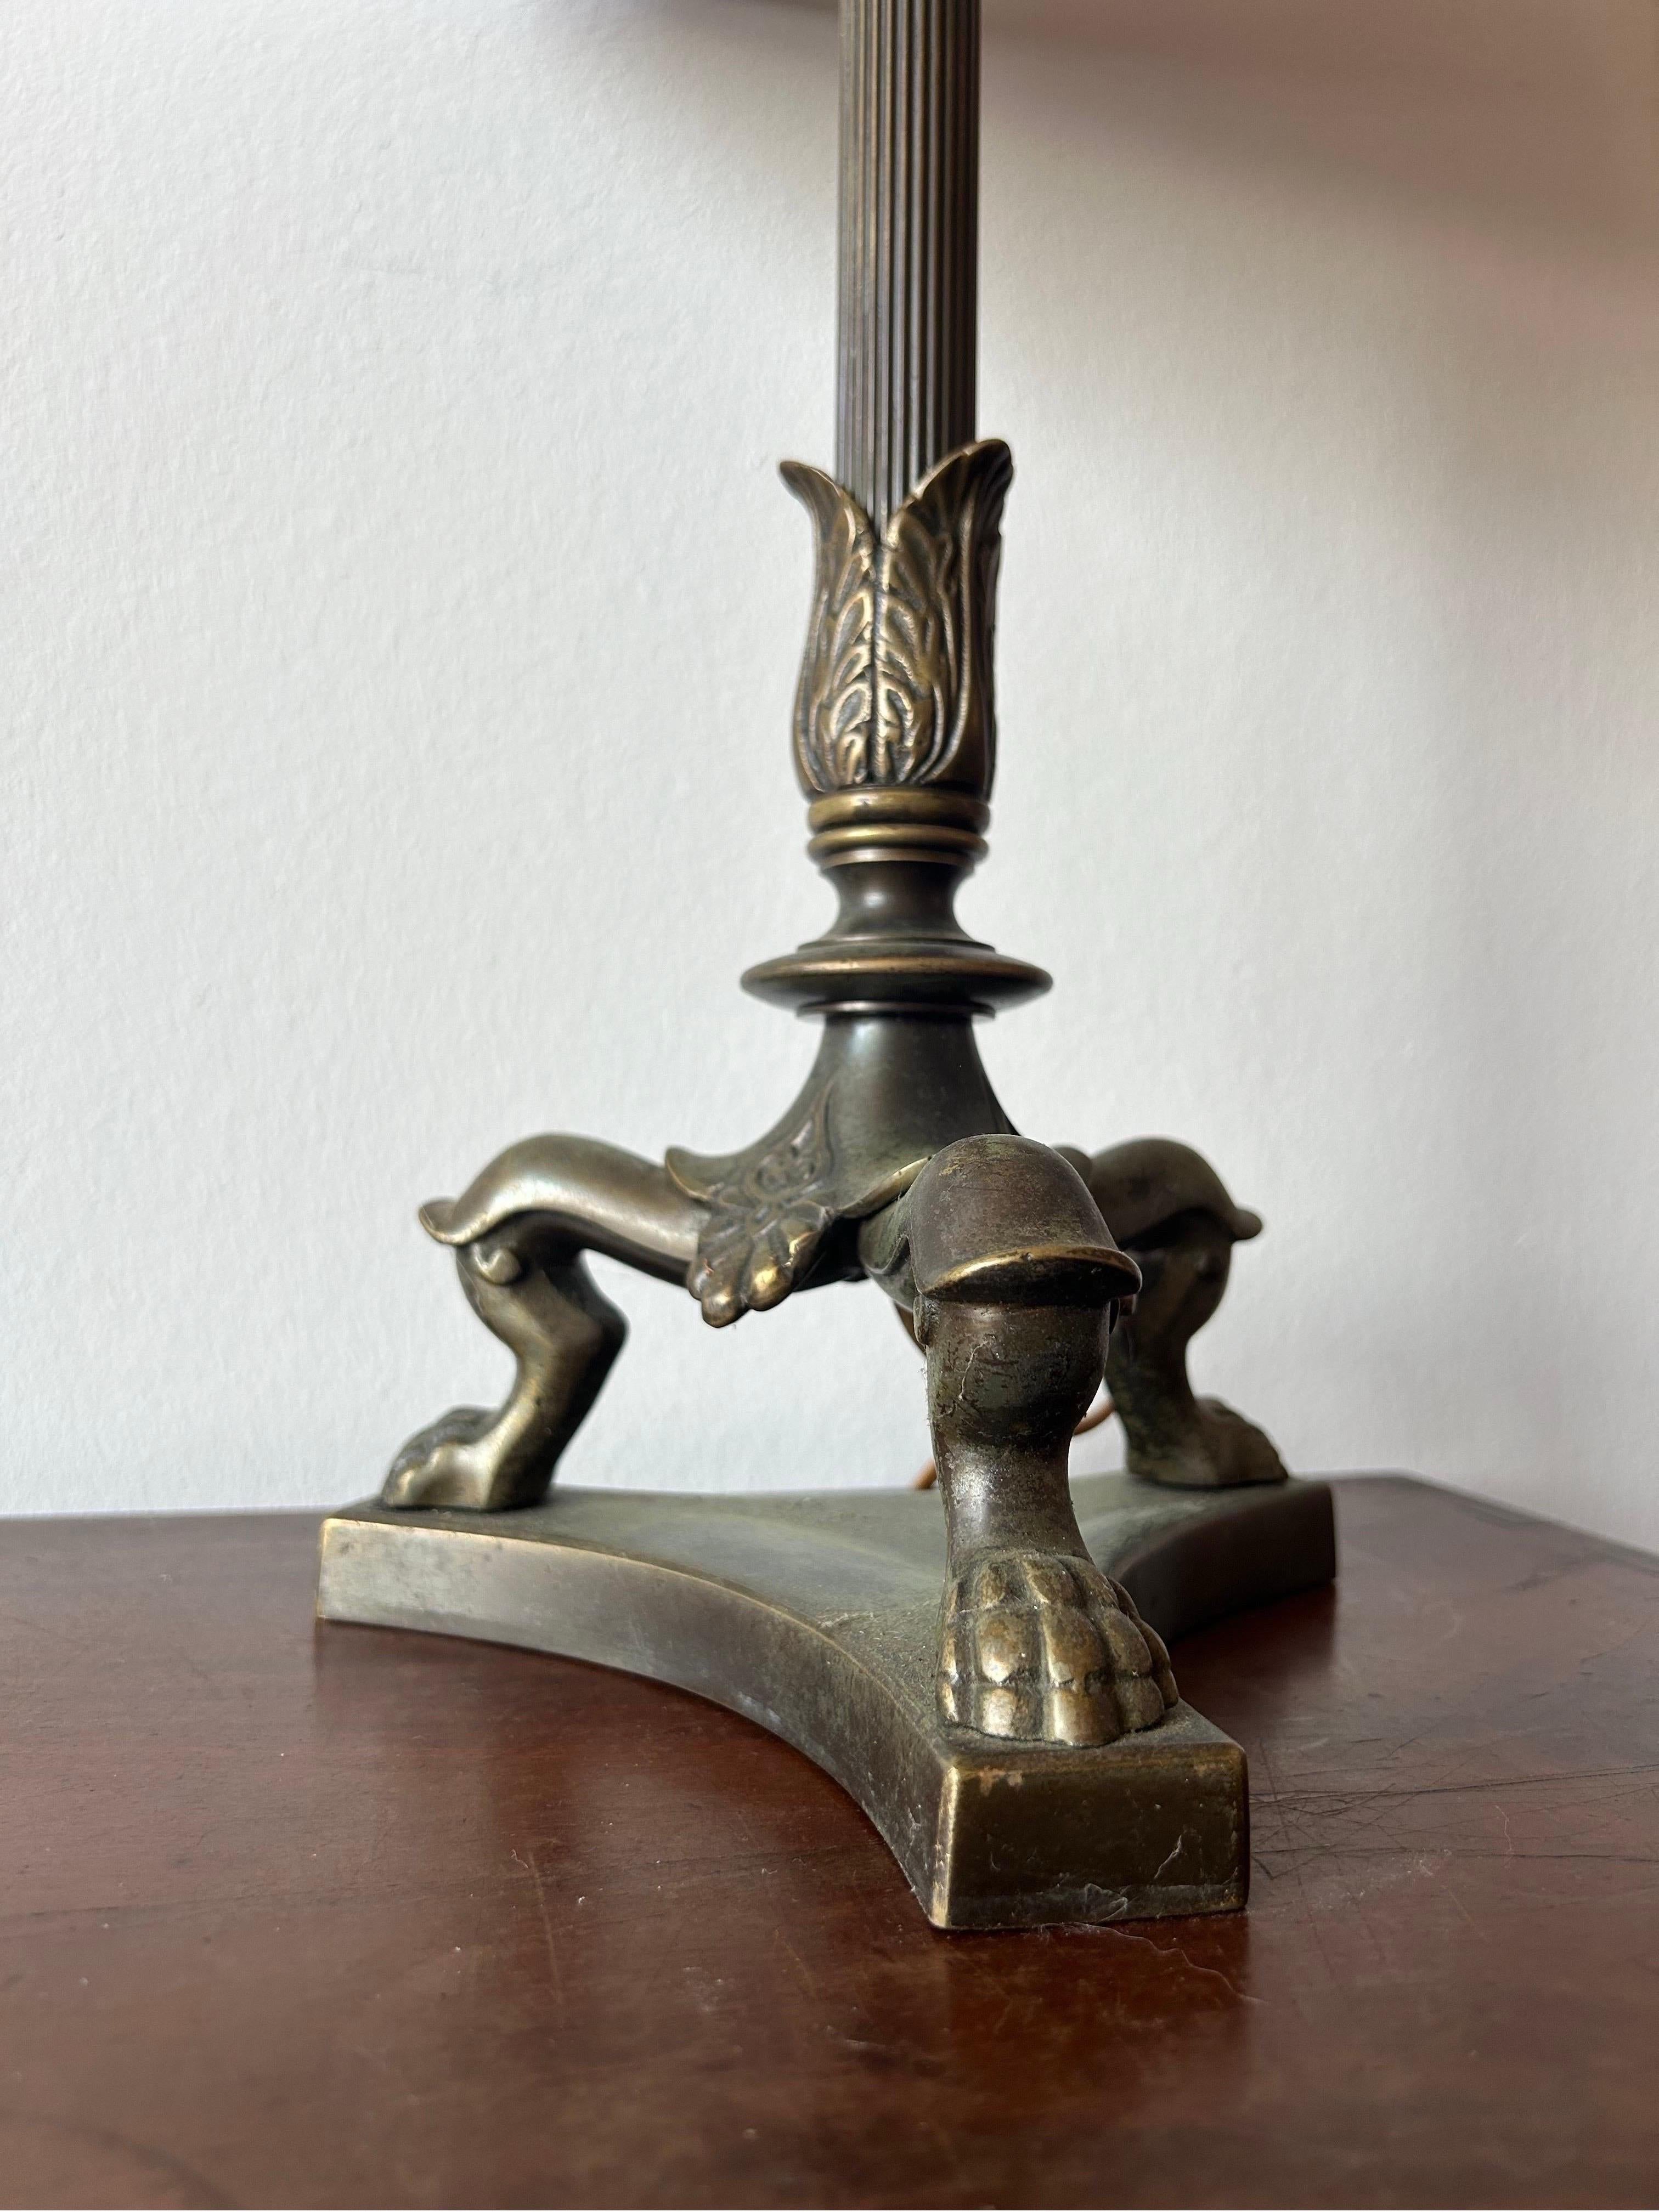 Artist made Bronze Lampe zugeschrieben dänischen Bildhauer TH Stein und ist in den 1850er Jahren gemacht.
Die Lampe weist deutliche Bezüge sowohl zu Pompeji als auch zu Herculanum auf.
Die Lampe ist aus massiver Bronze mit einer schönen natürlichen